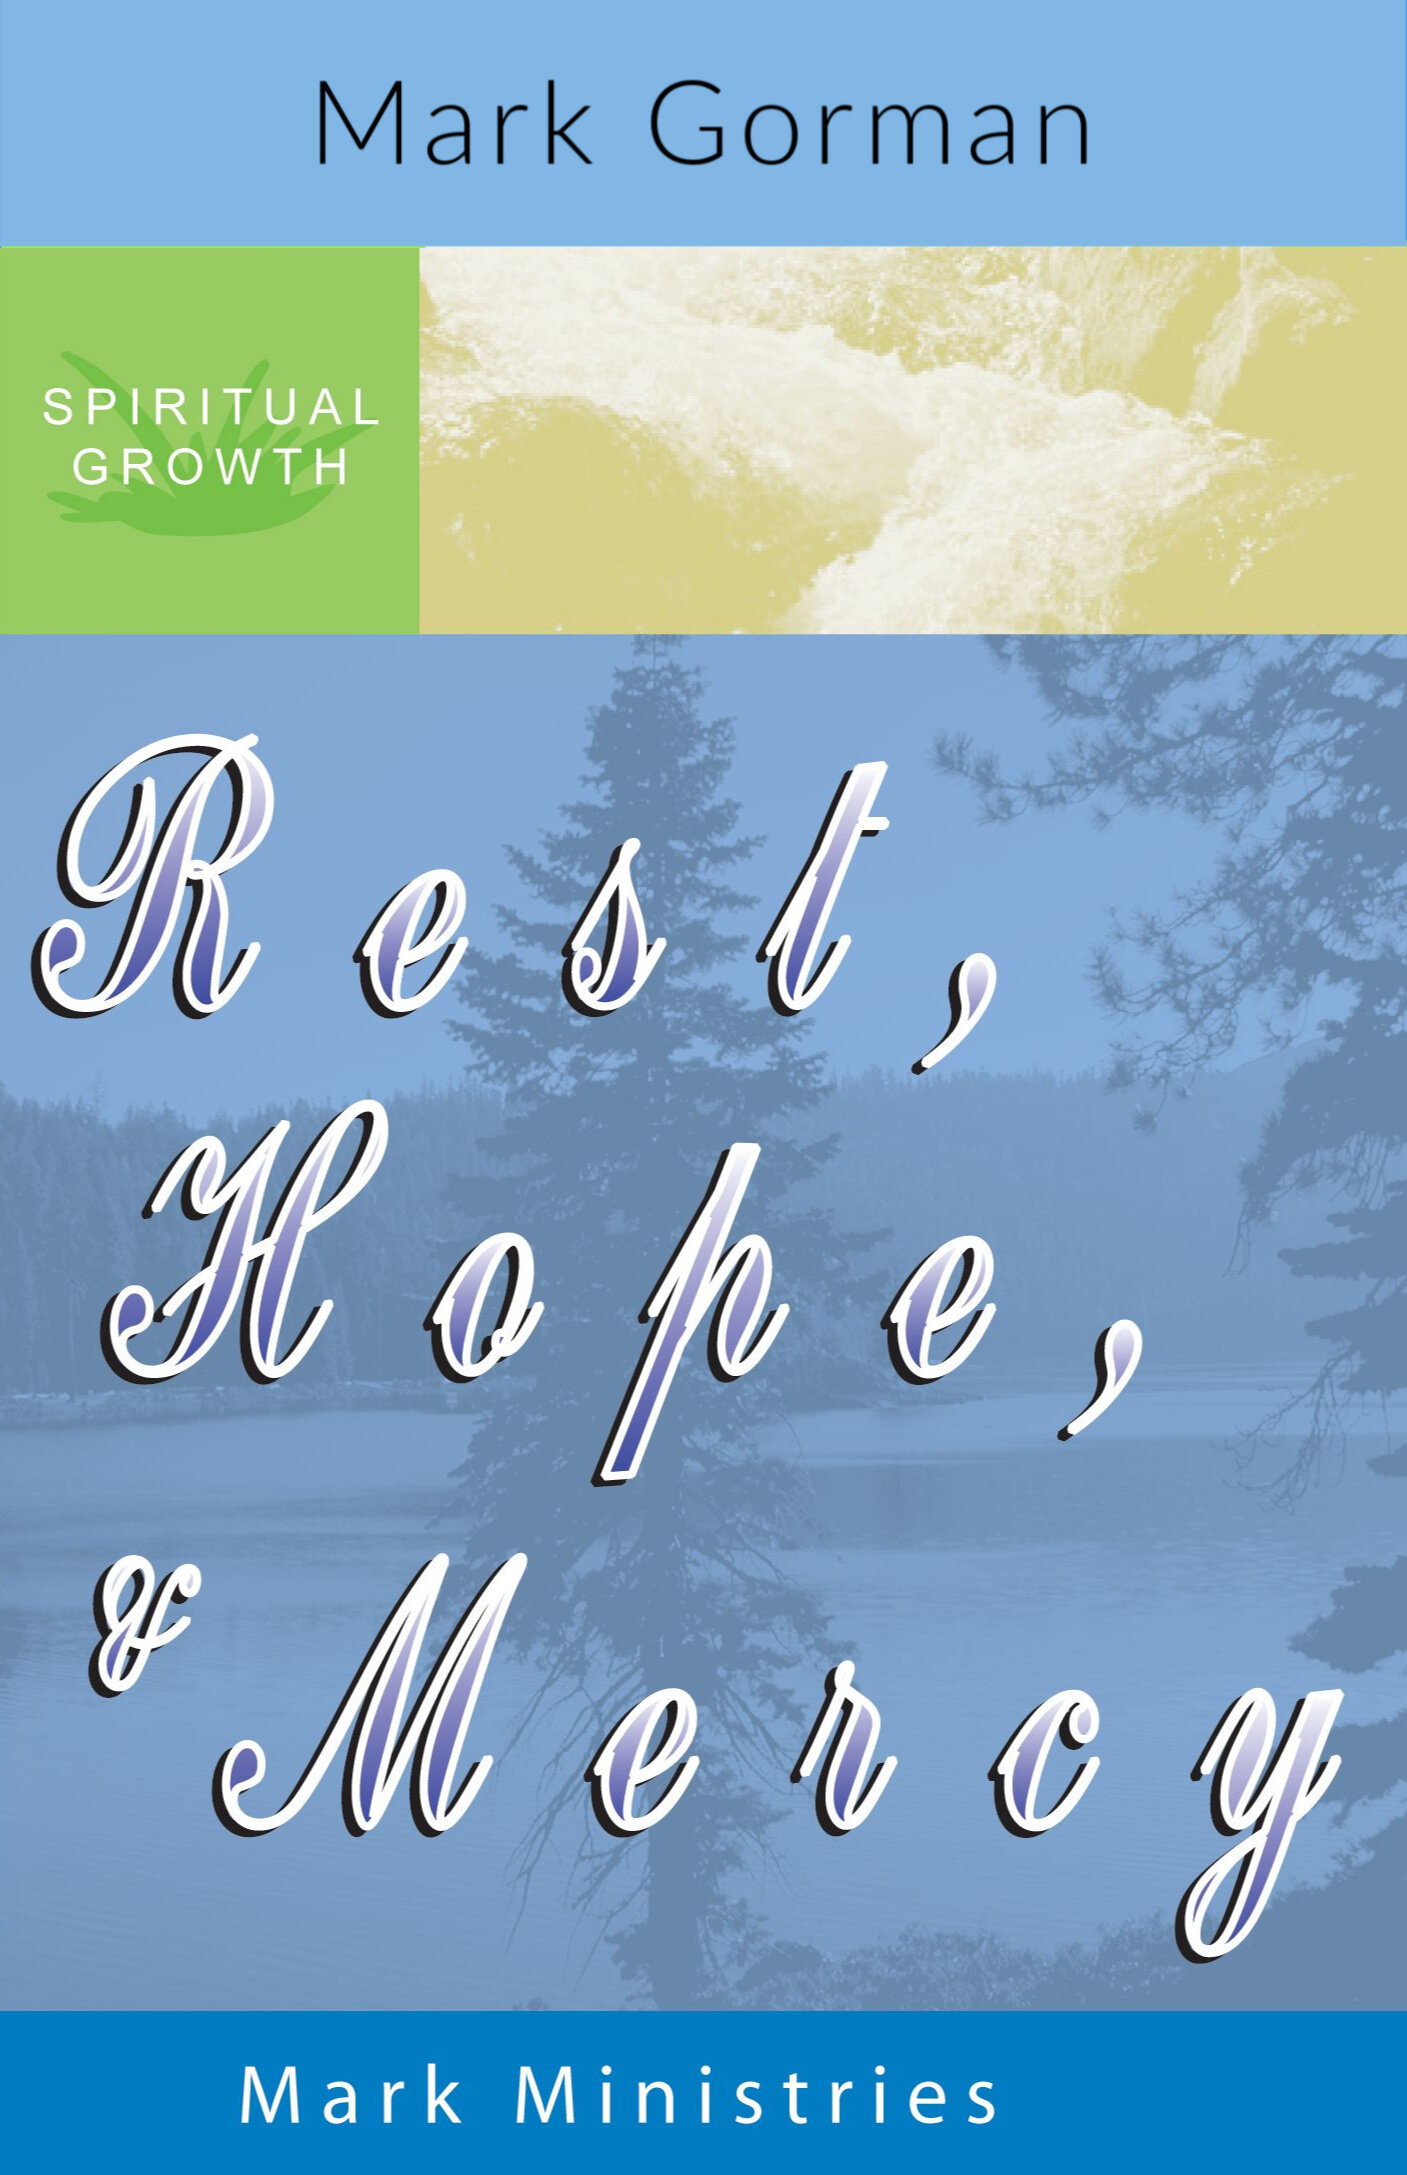 Rest, Hope Mercy - added .jpg